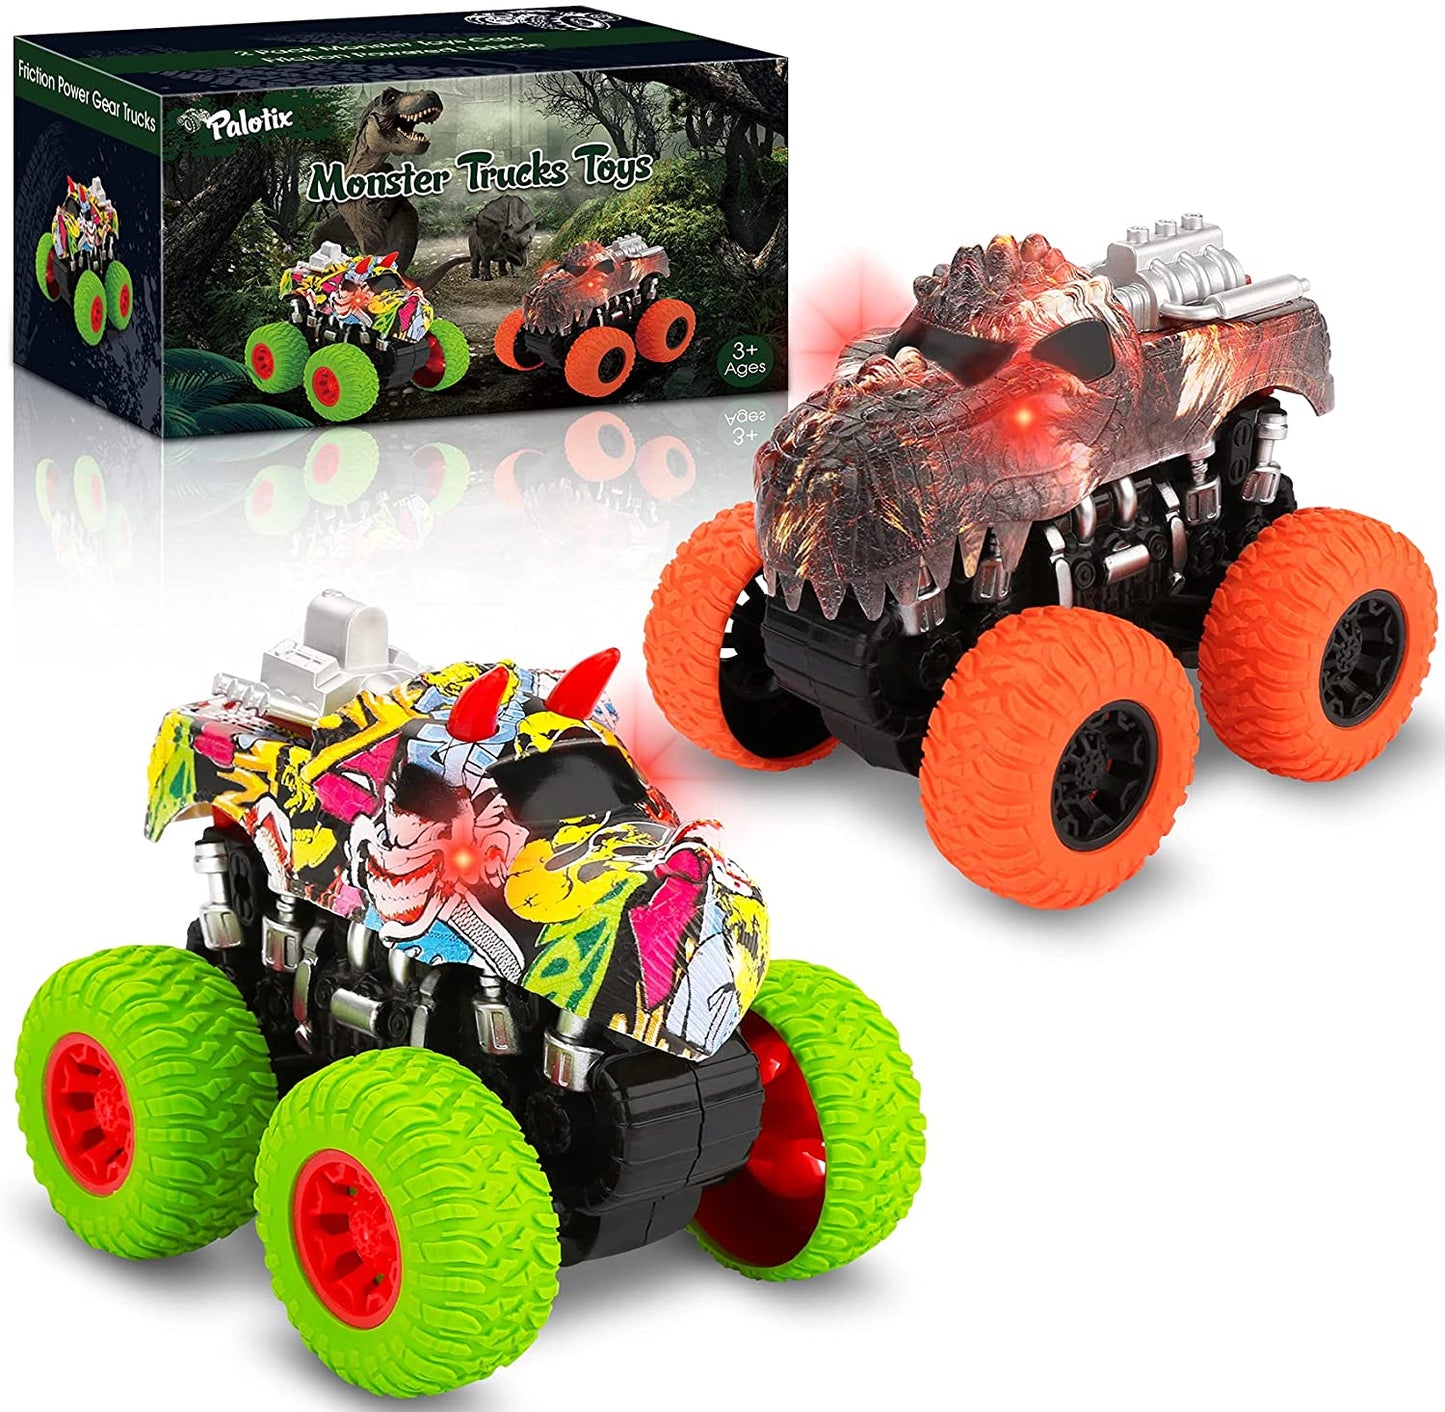 Kids Toys Trucks Dinosaur Toy - Monster Trucks for Boys Dinosaur